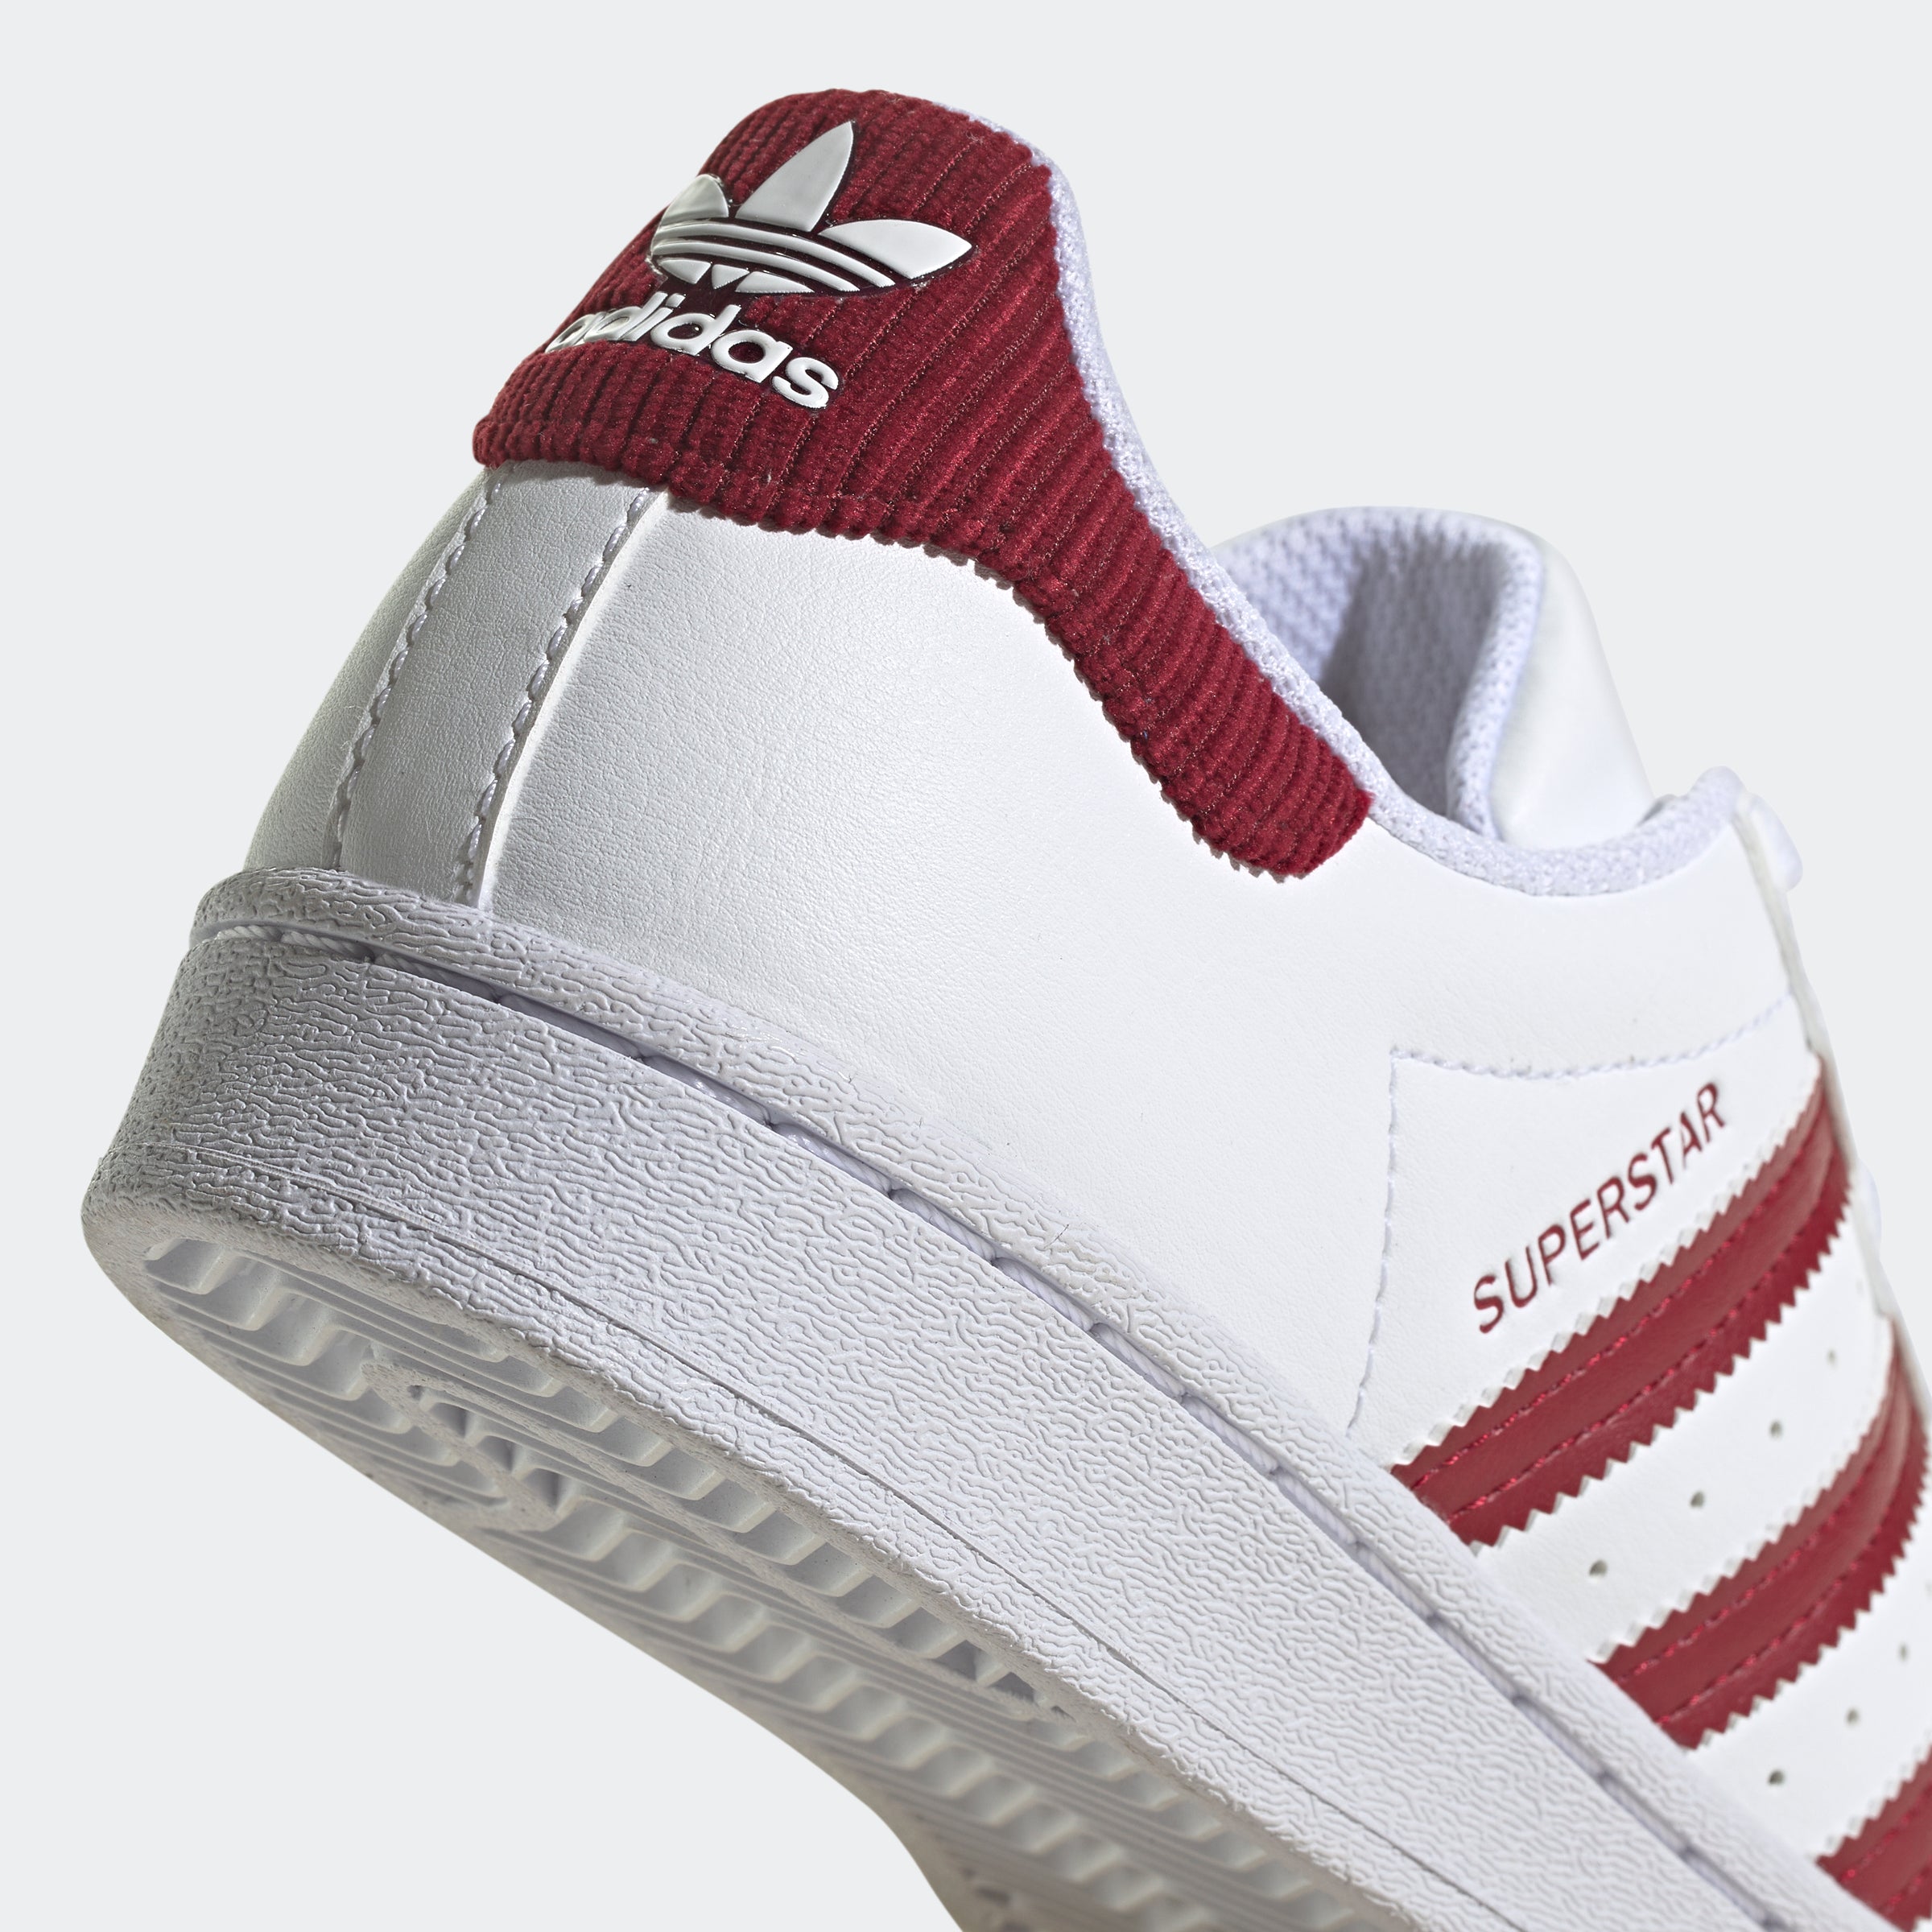 ADIDAS Kids SuperStar Shell Toe White Black Stripes Sneaker Unisex - Size  12K